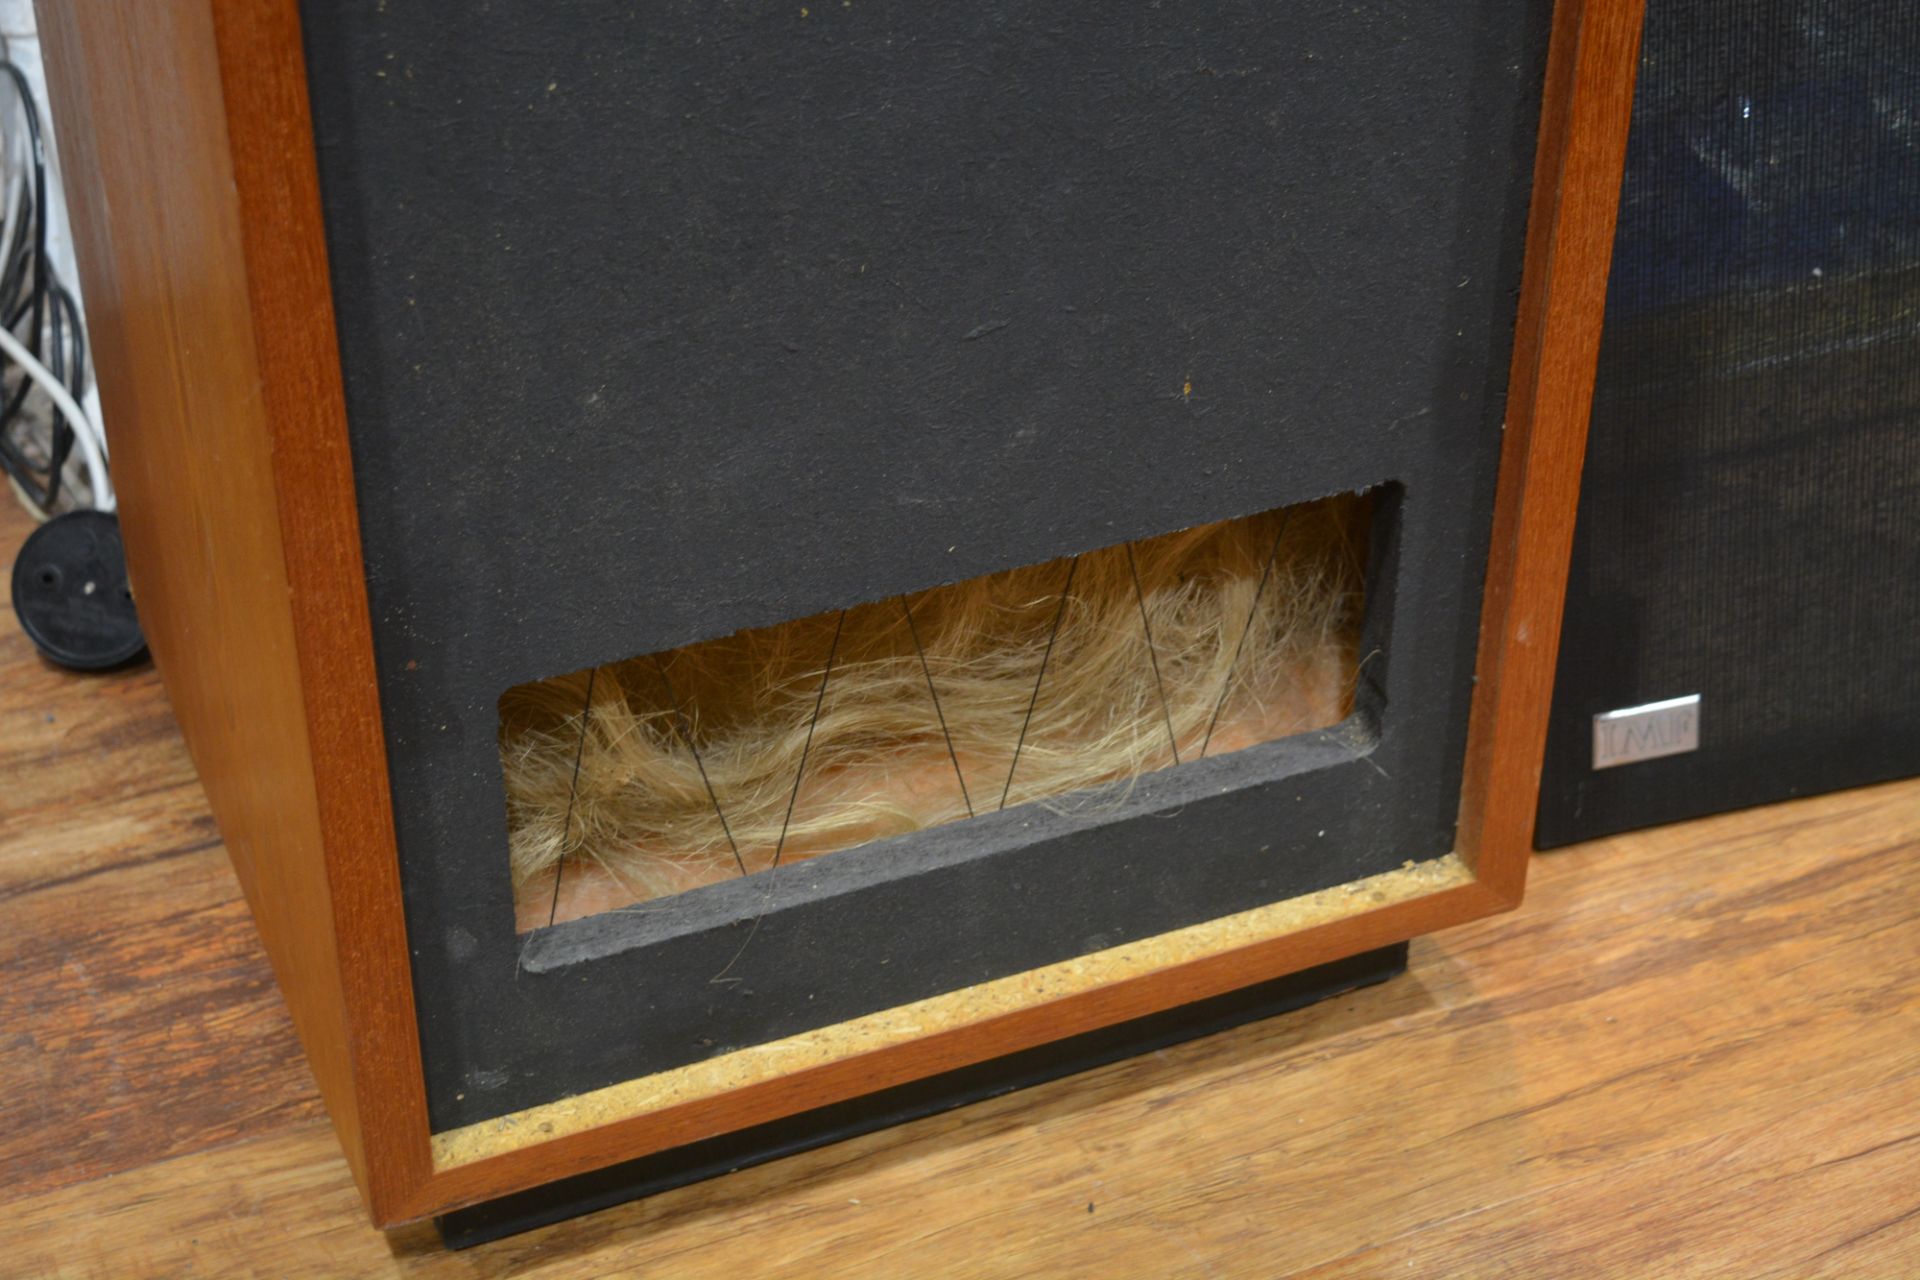 Pair of IMF speakers teak cased, each speaker measures 38cm wide x 88cm high x 35cm deep Overall - Image 11 of 15